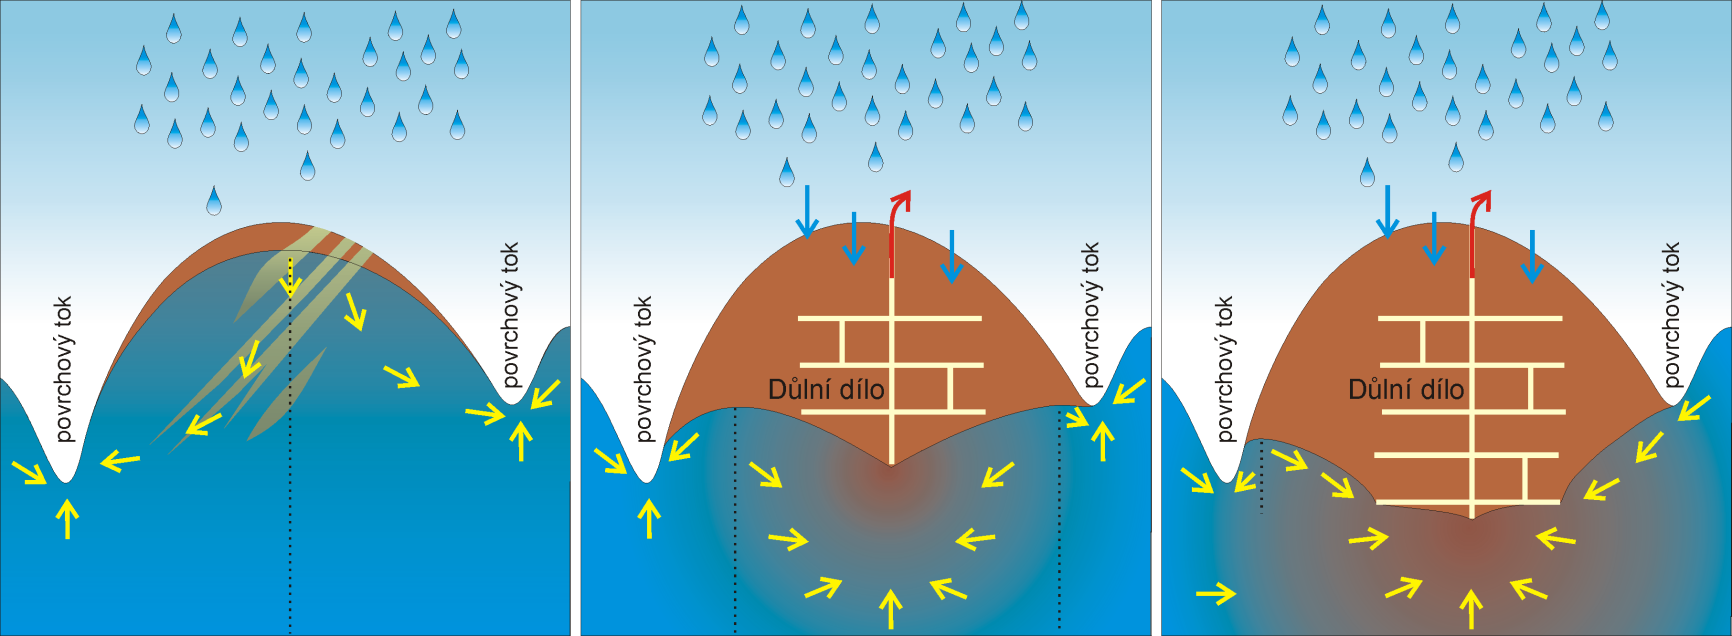 Cíle ložiskové hydrogeologie Těžená ložiska Režim podzemních vod ovlivněný důlním dílem dopad těžby na hydrogeologickou strukturu porovnává se